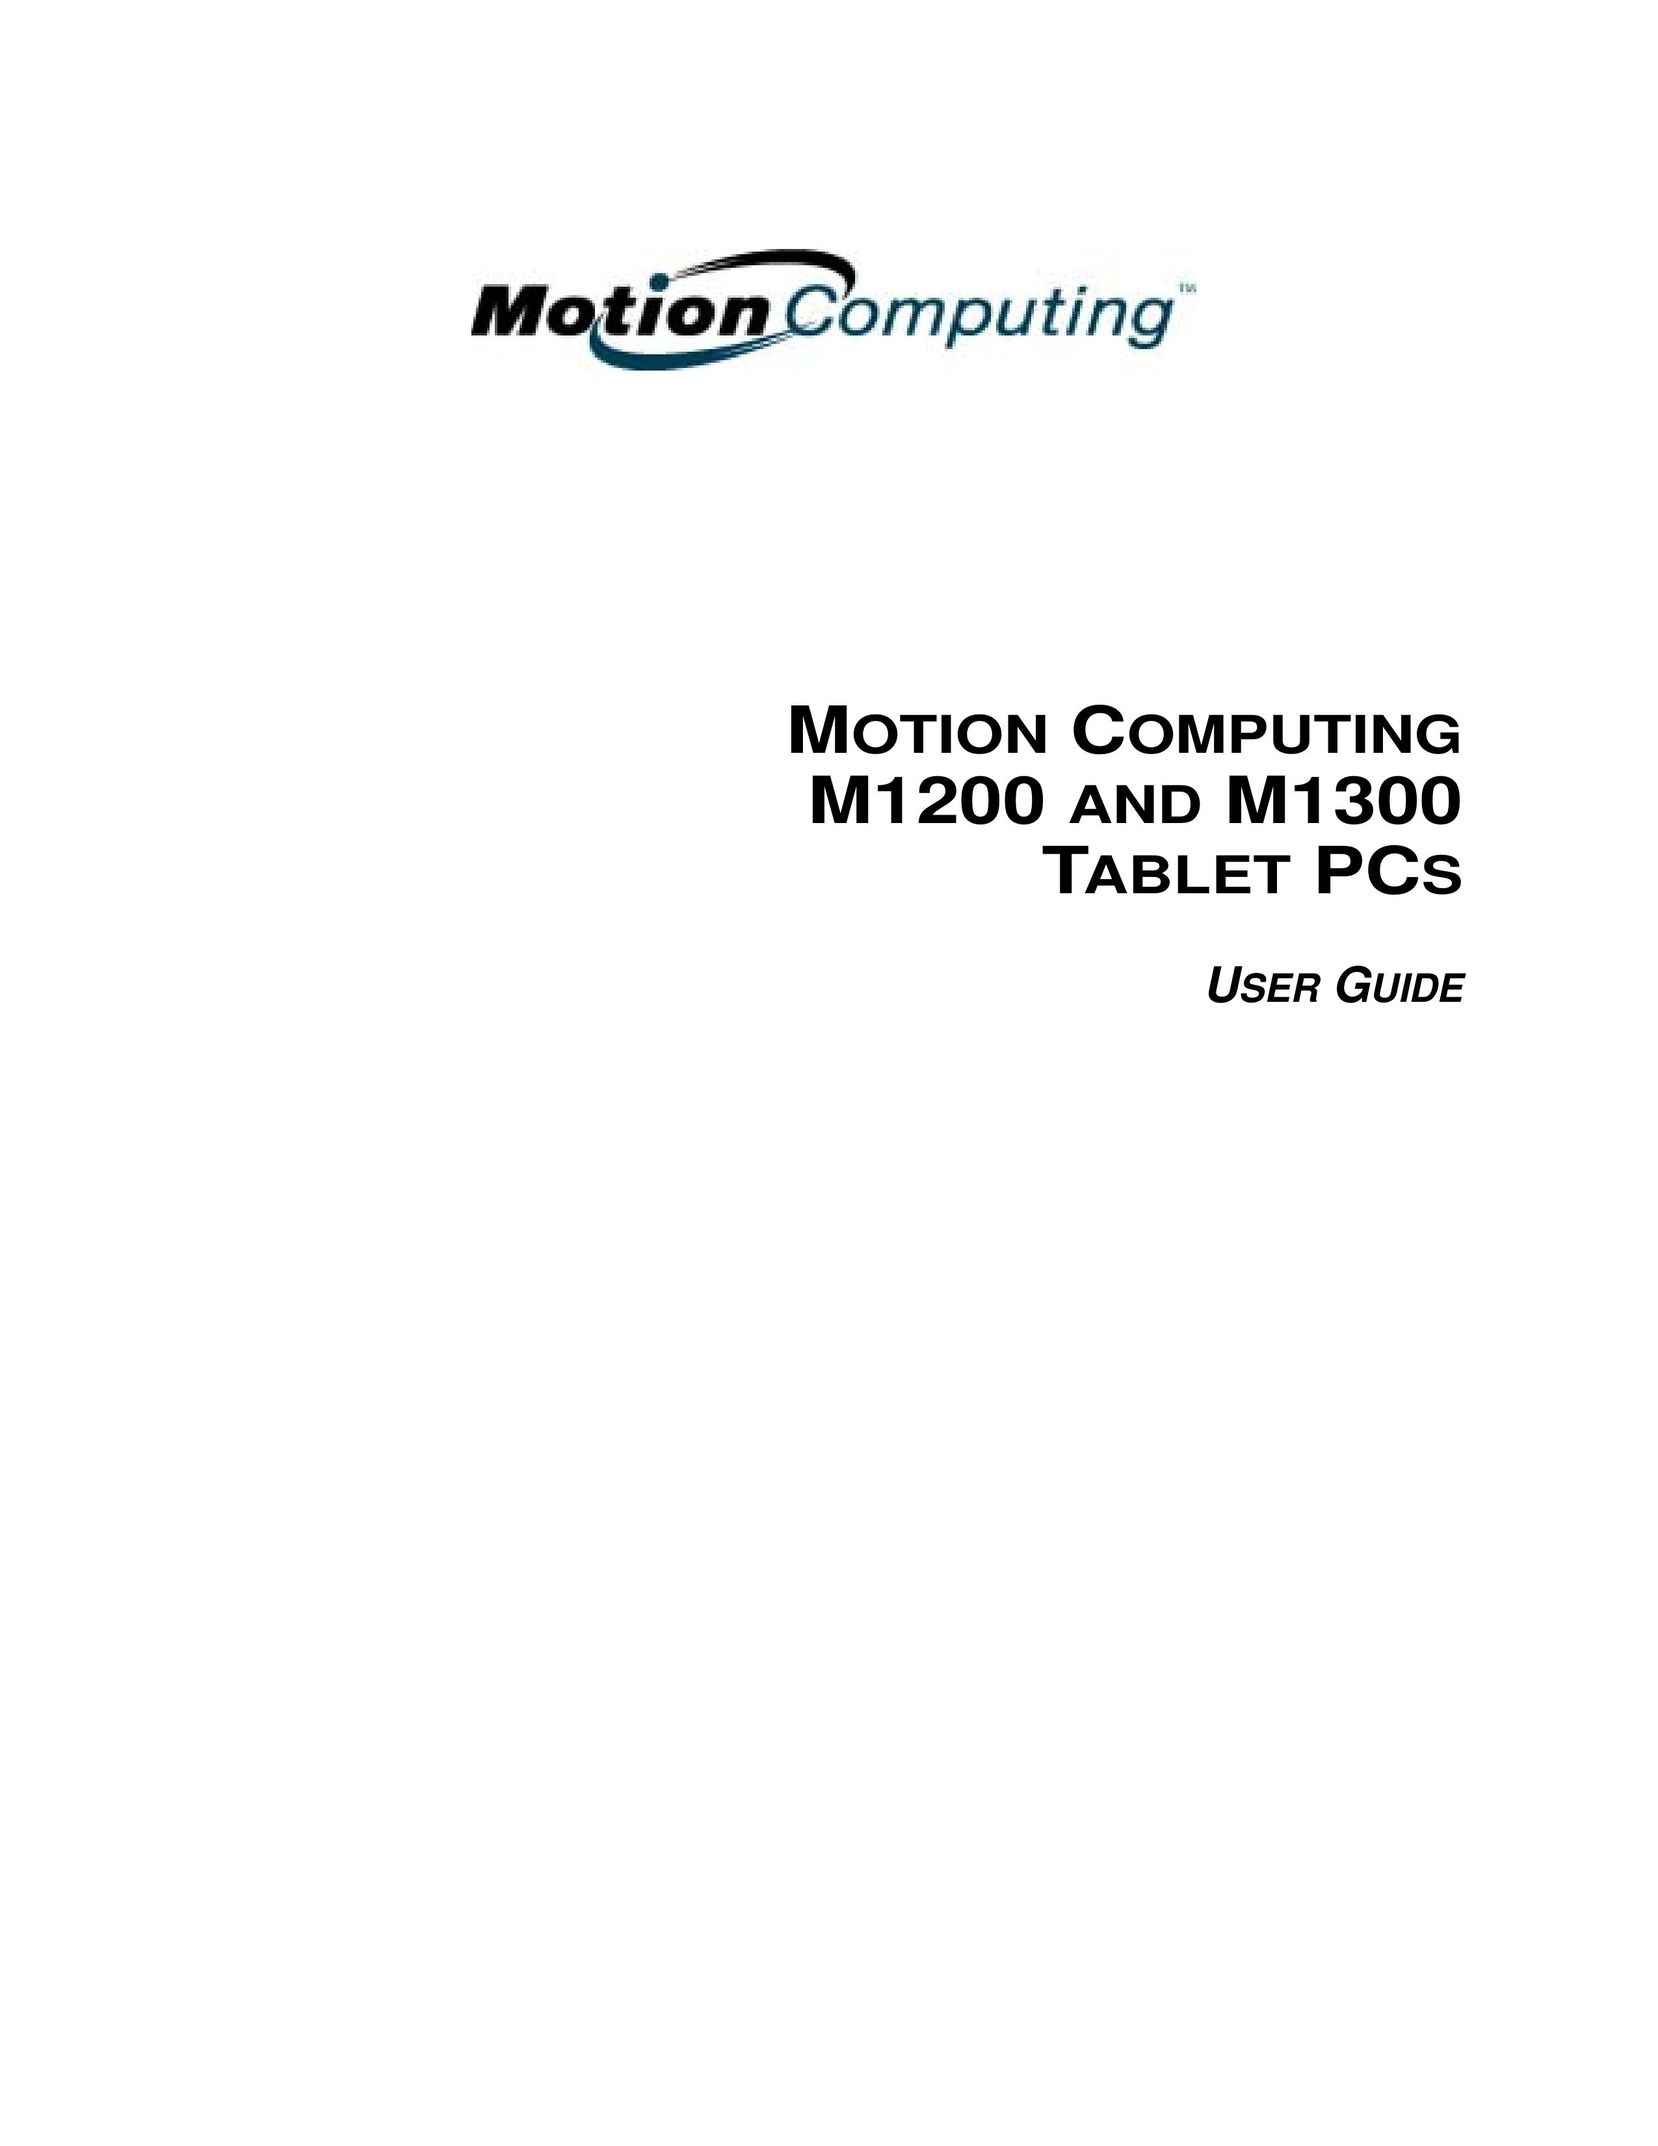 Motion Computing M1300 Laptop User Manual